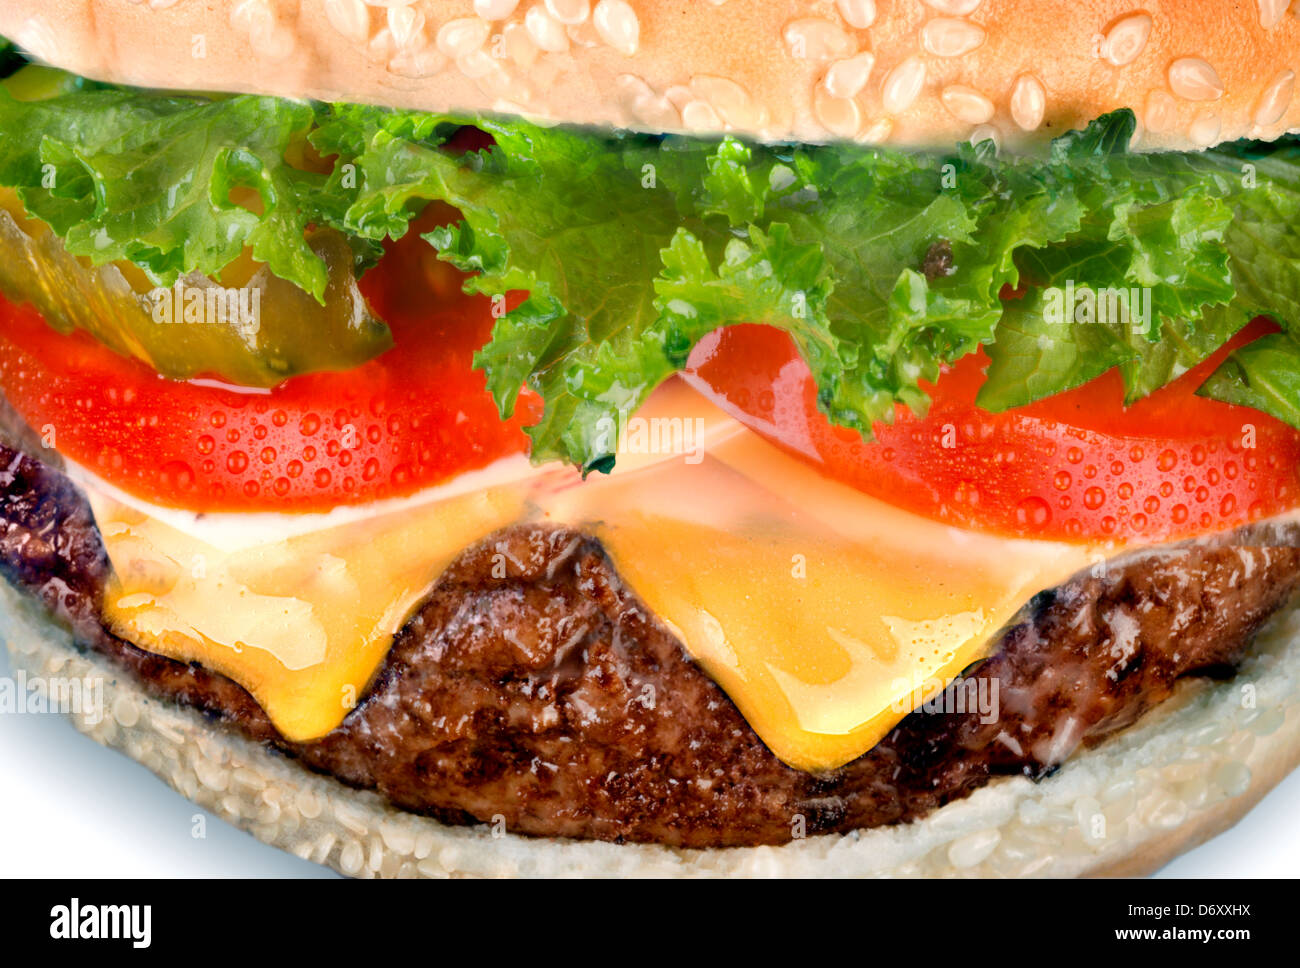 cheeseburger close up Stock Photo